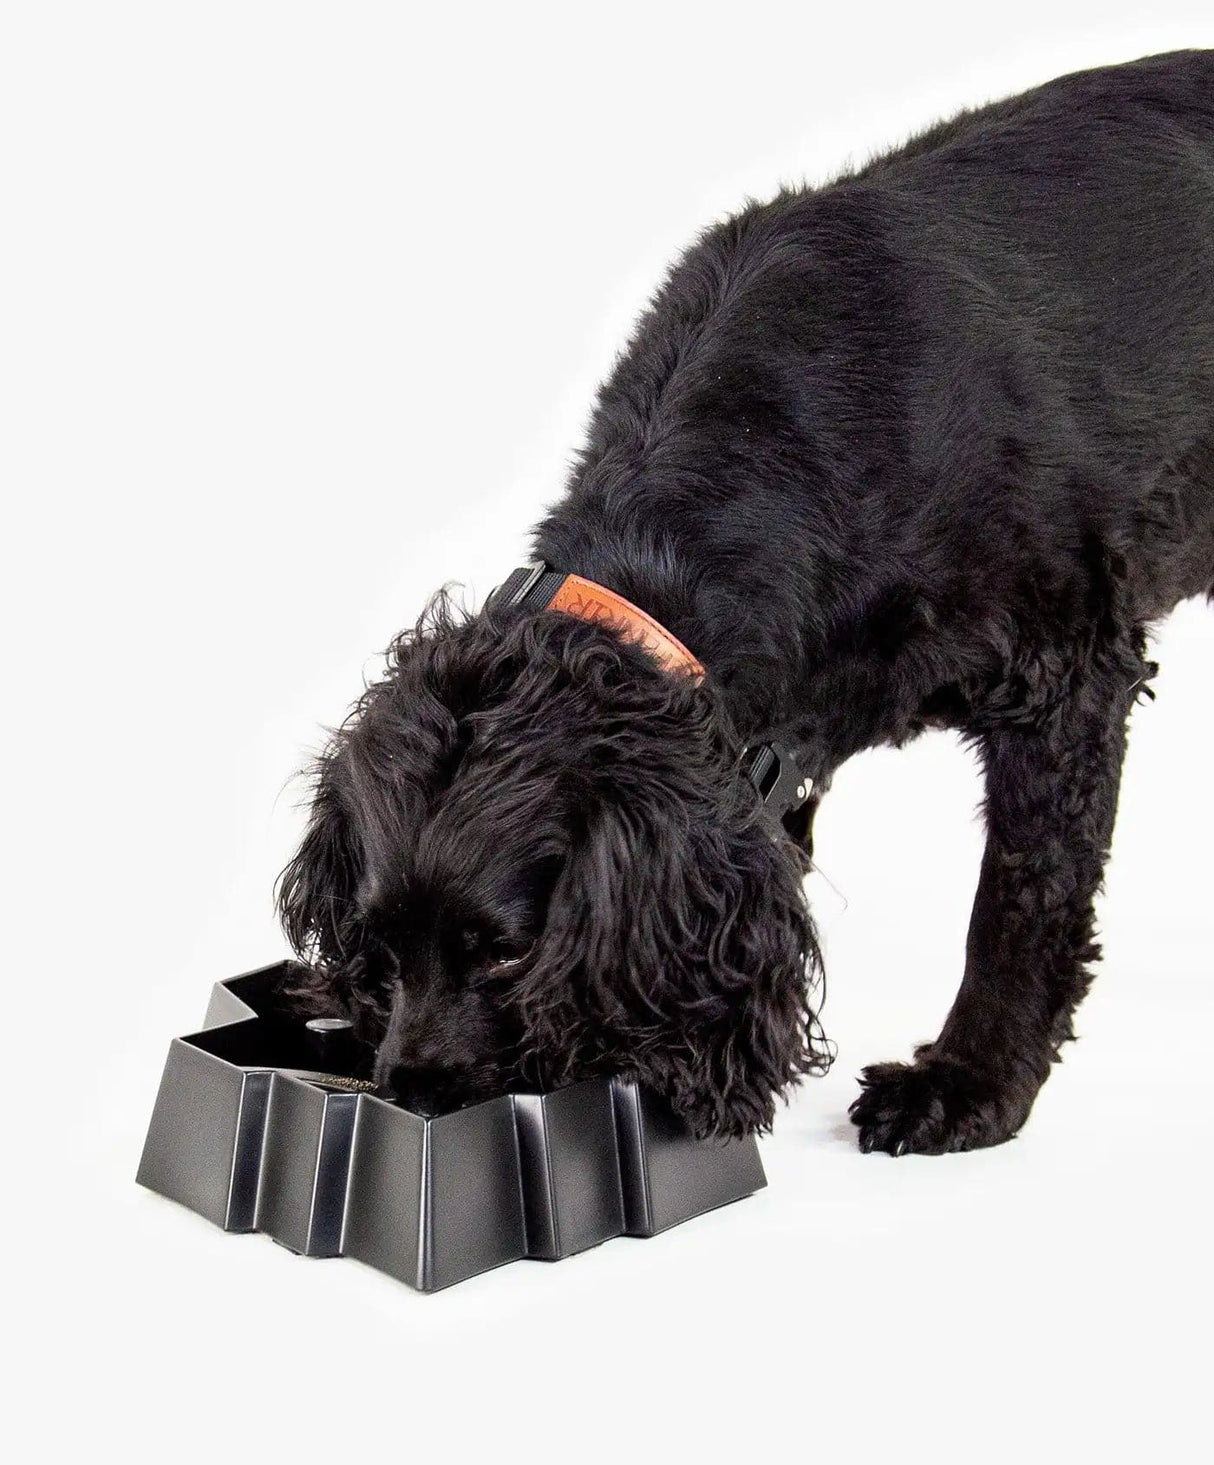 https://fenrircanineleaders.com/cdn/shop/files/fenrir-canine-leaders-fenrir-puzzle-bowl-fenrir-puzzle-bowl-for-dog-the-biggest-slow-feeder-dog-bowl-30259915948120.jpg?v=1697832352&width=1214